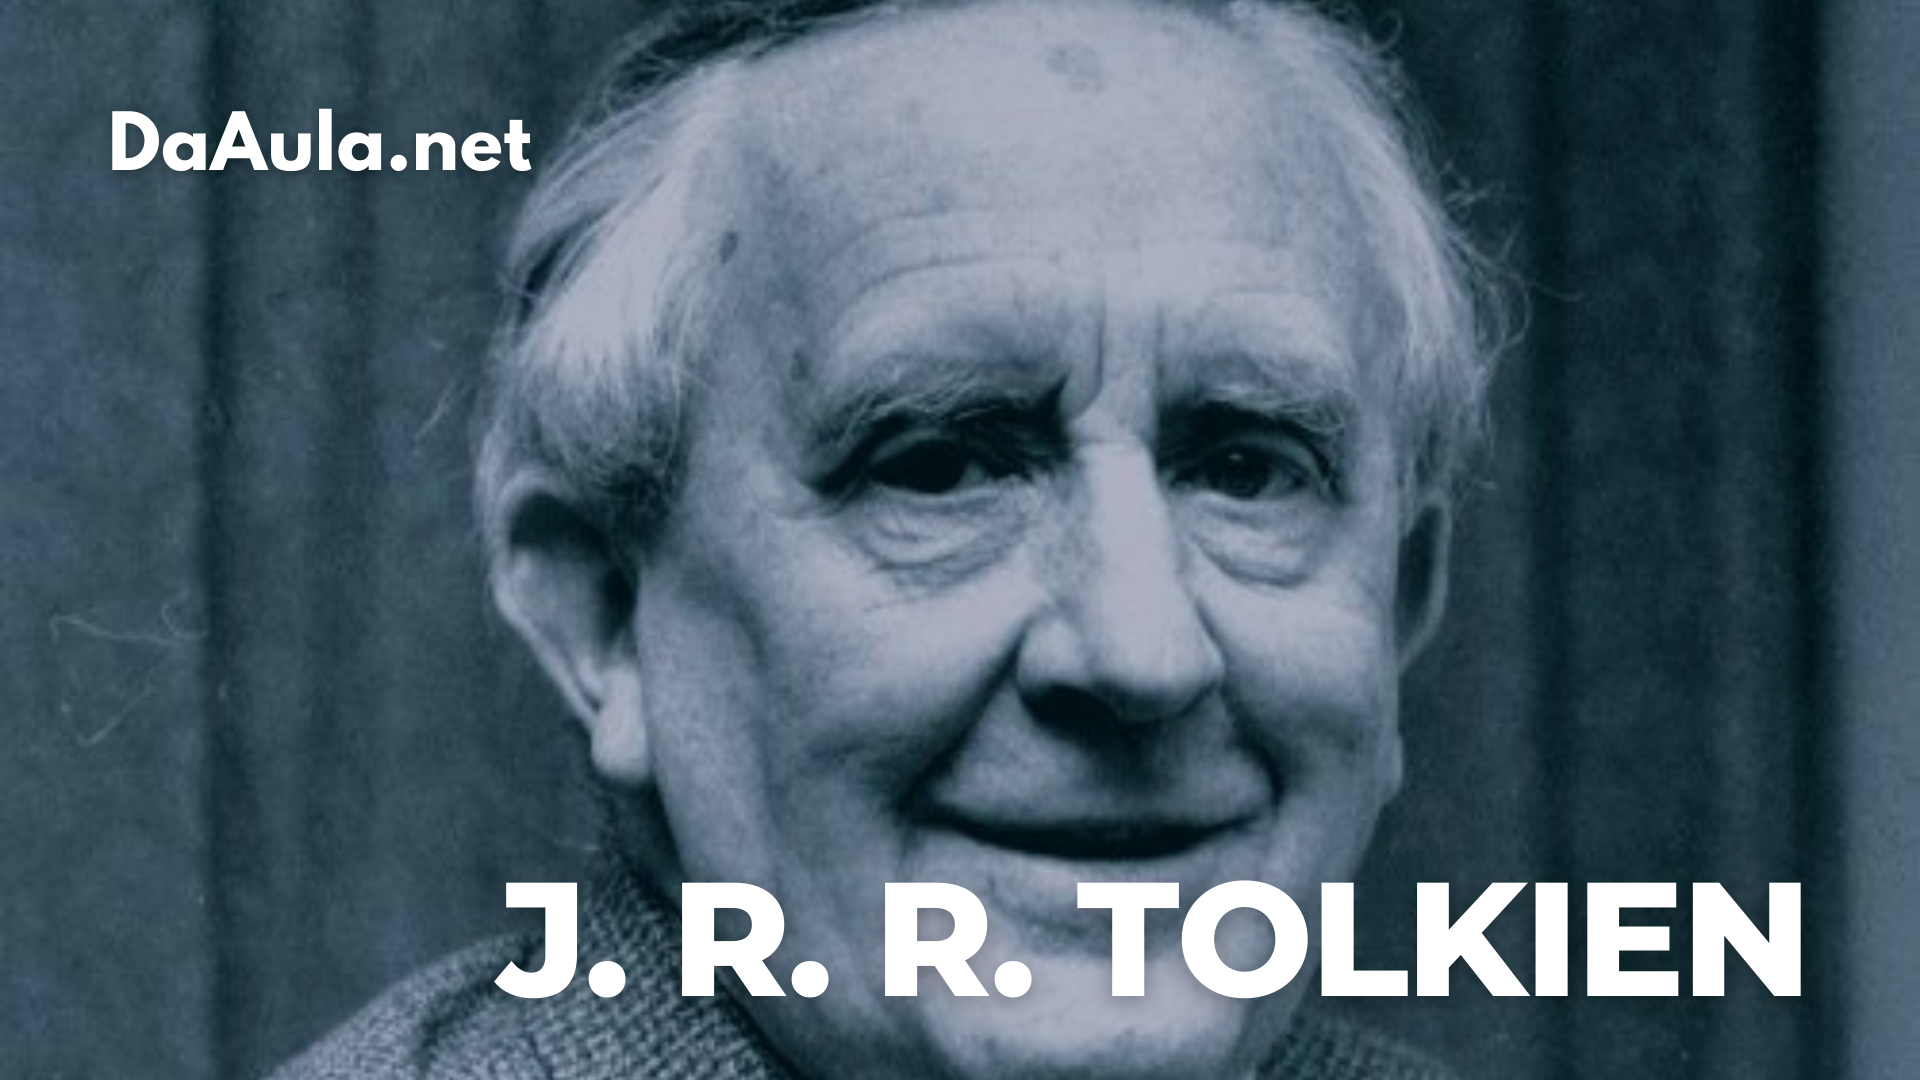 Quem foi J. R. R. Tolkien